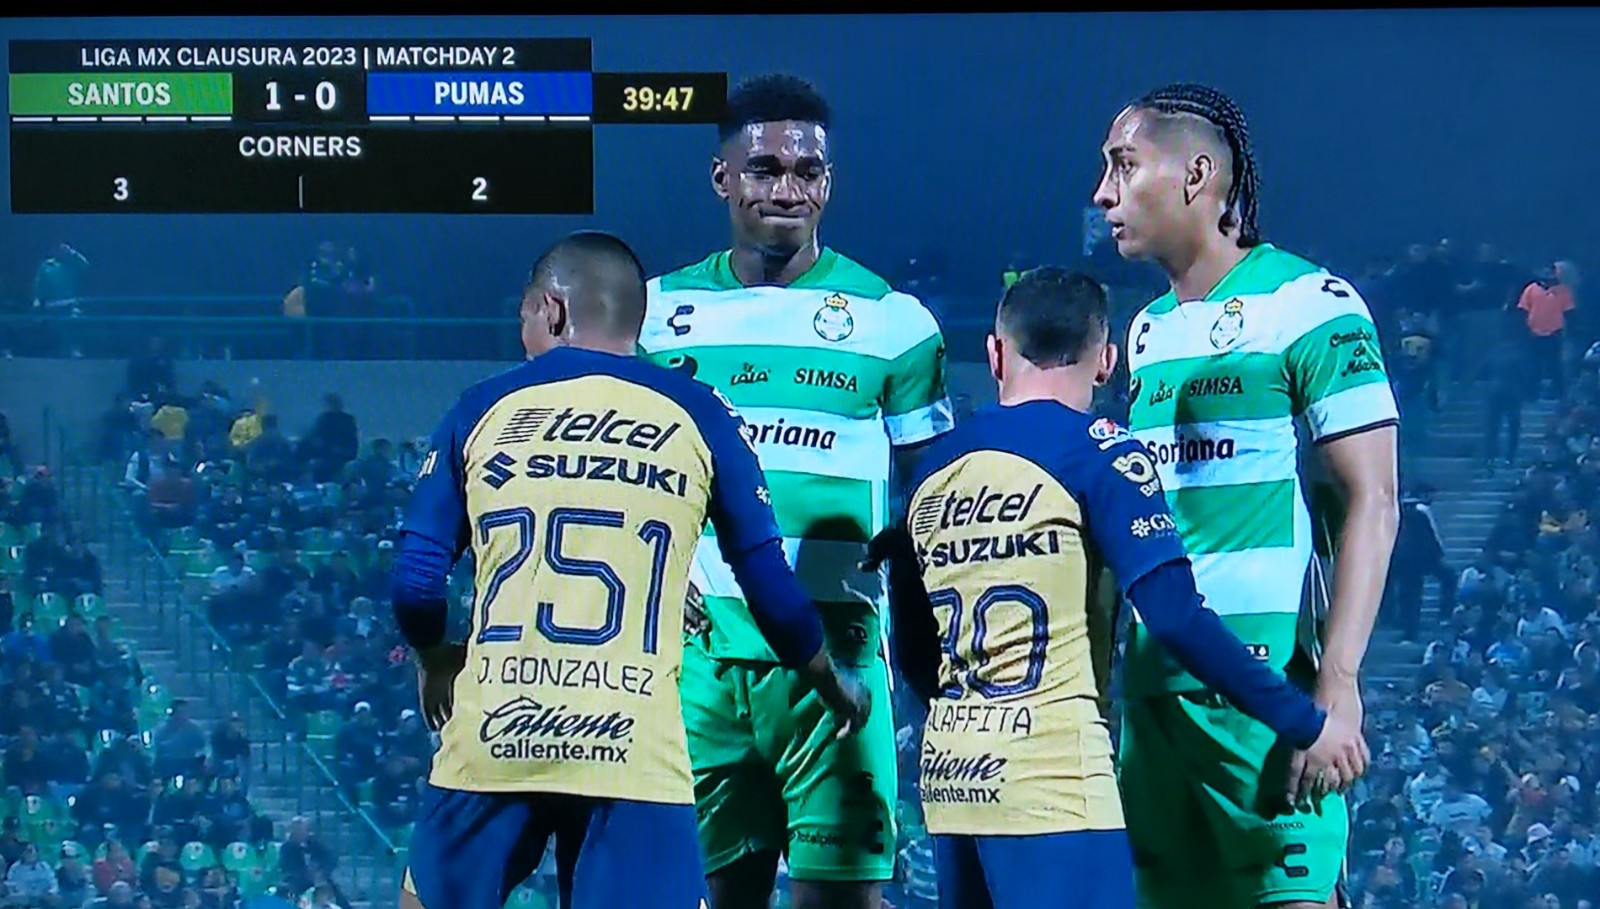 Pumas corner kick defending vs. Santos Laguna goes viral